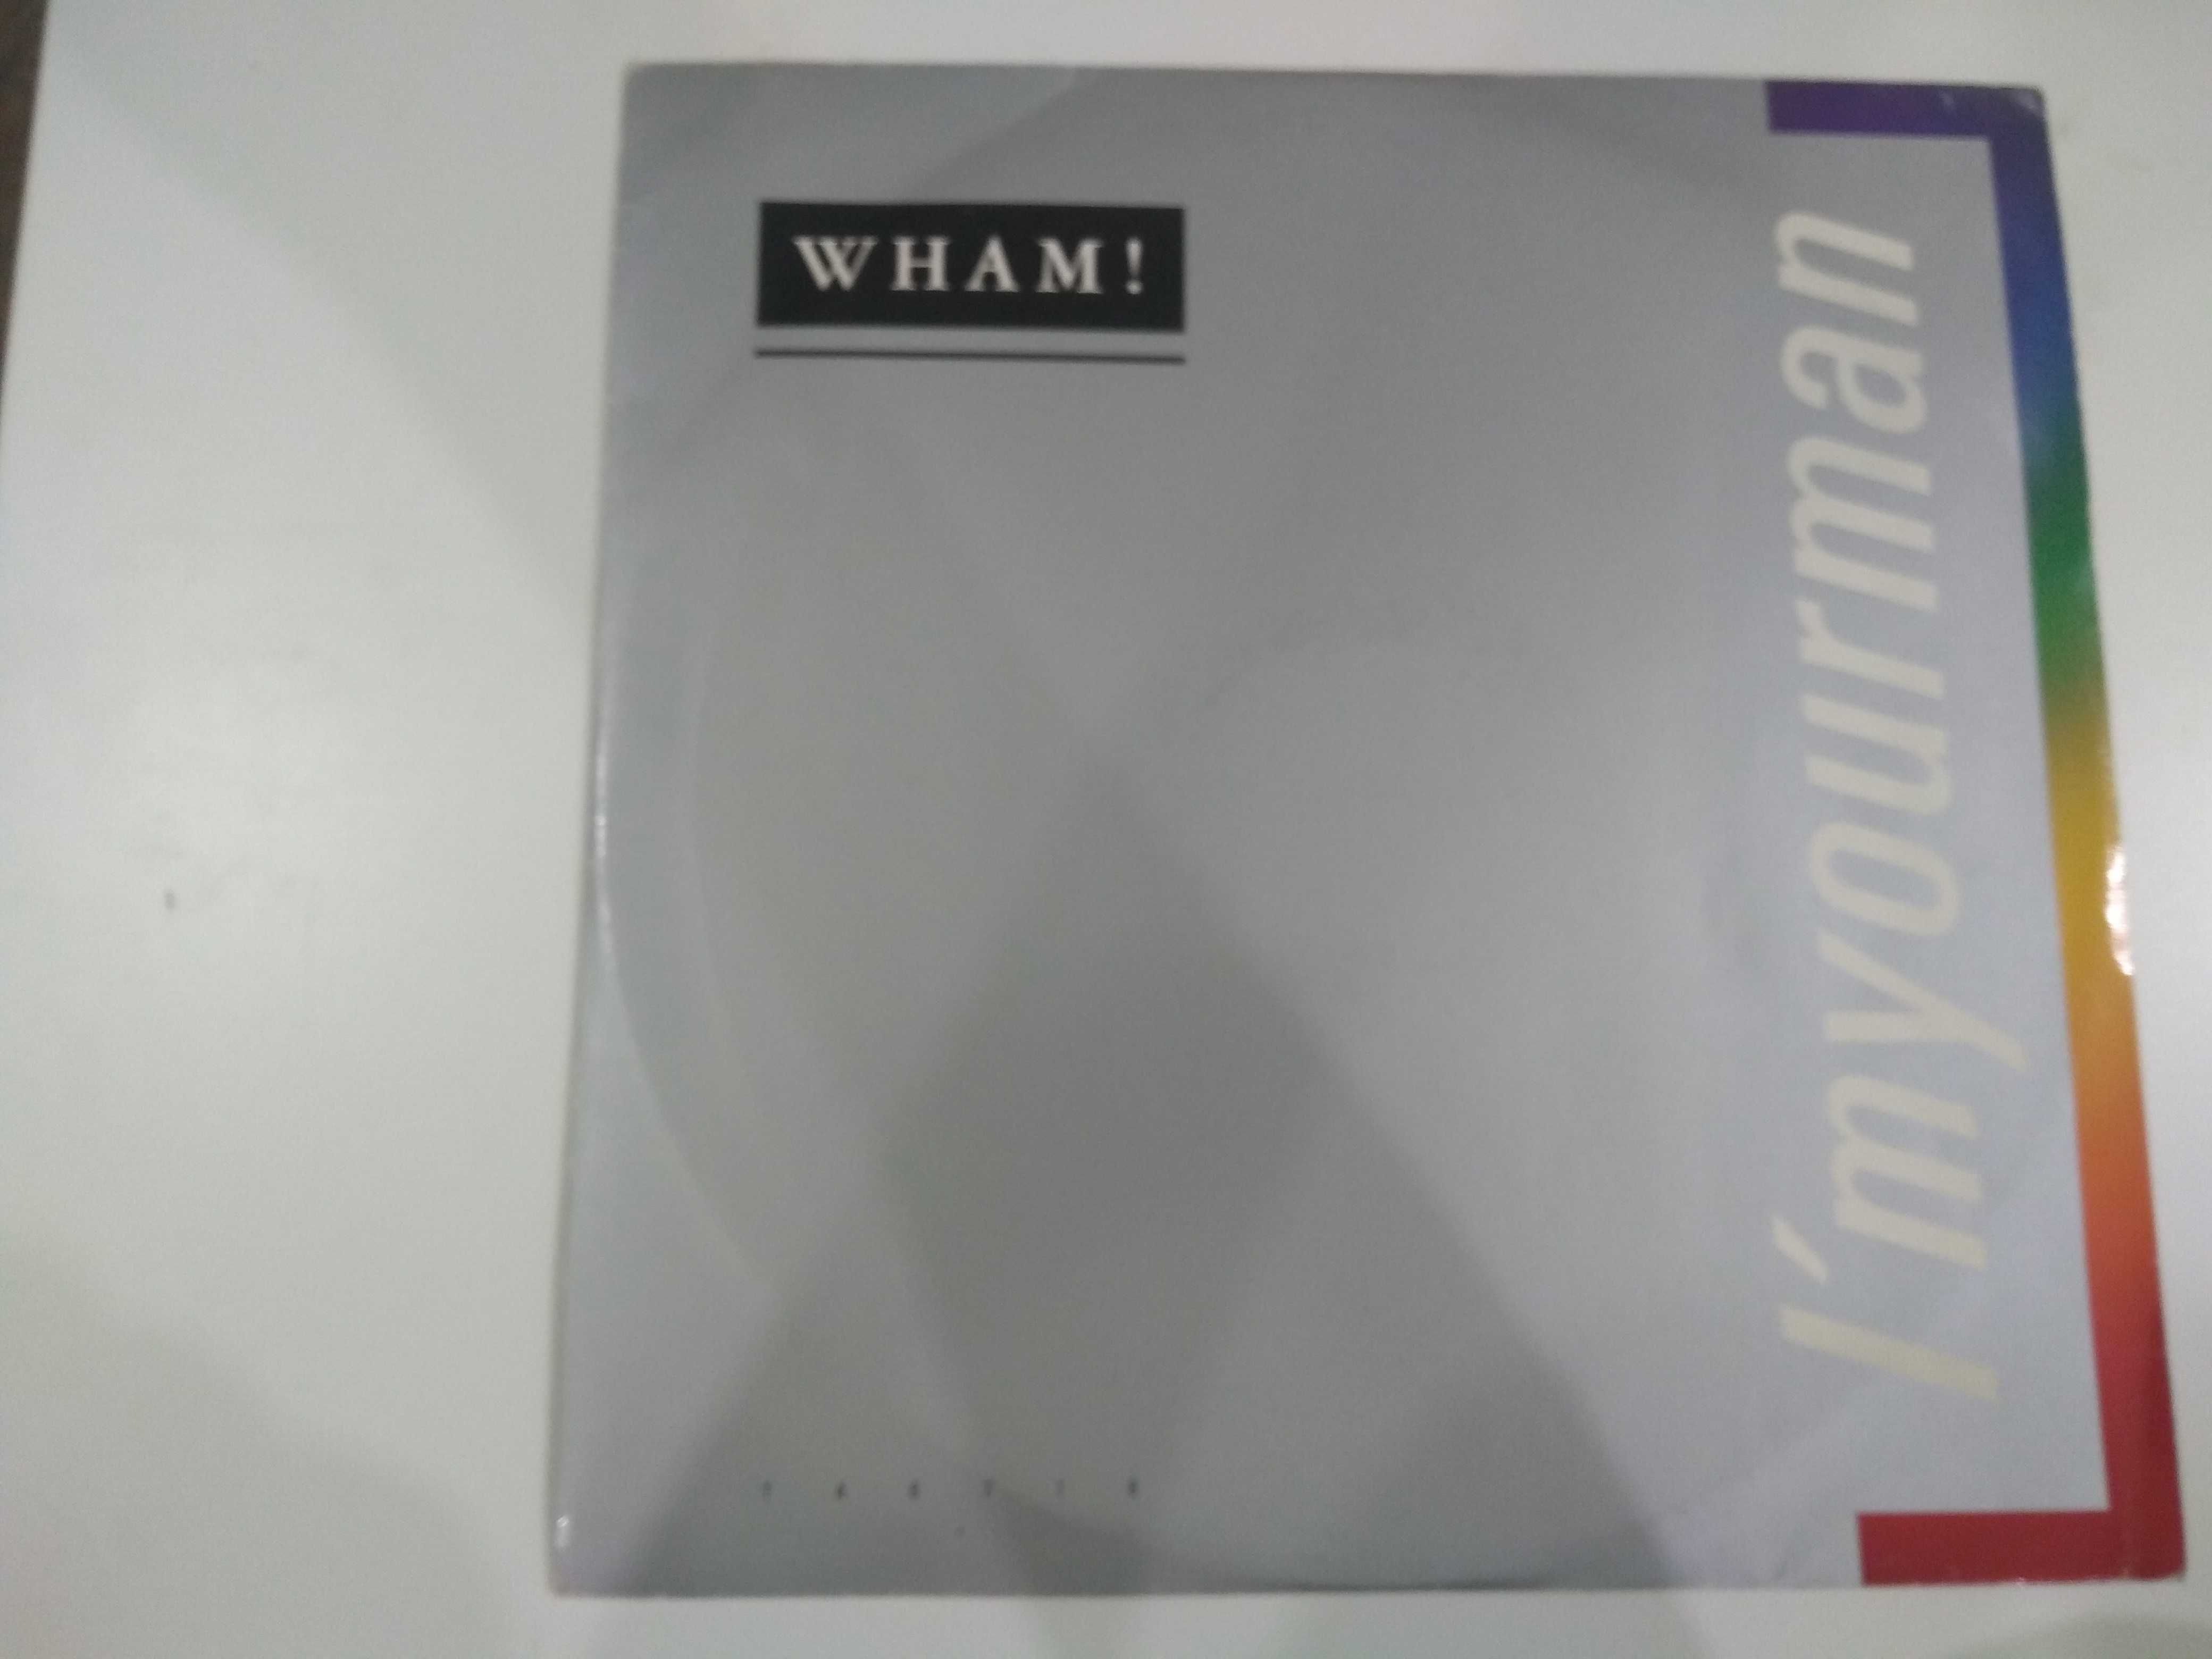 Dobra płyta - Wham i'myourman